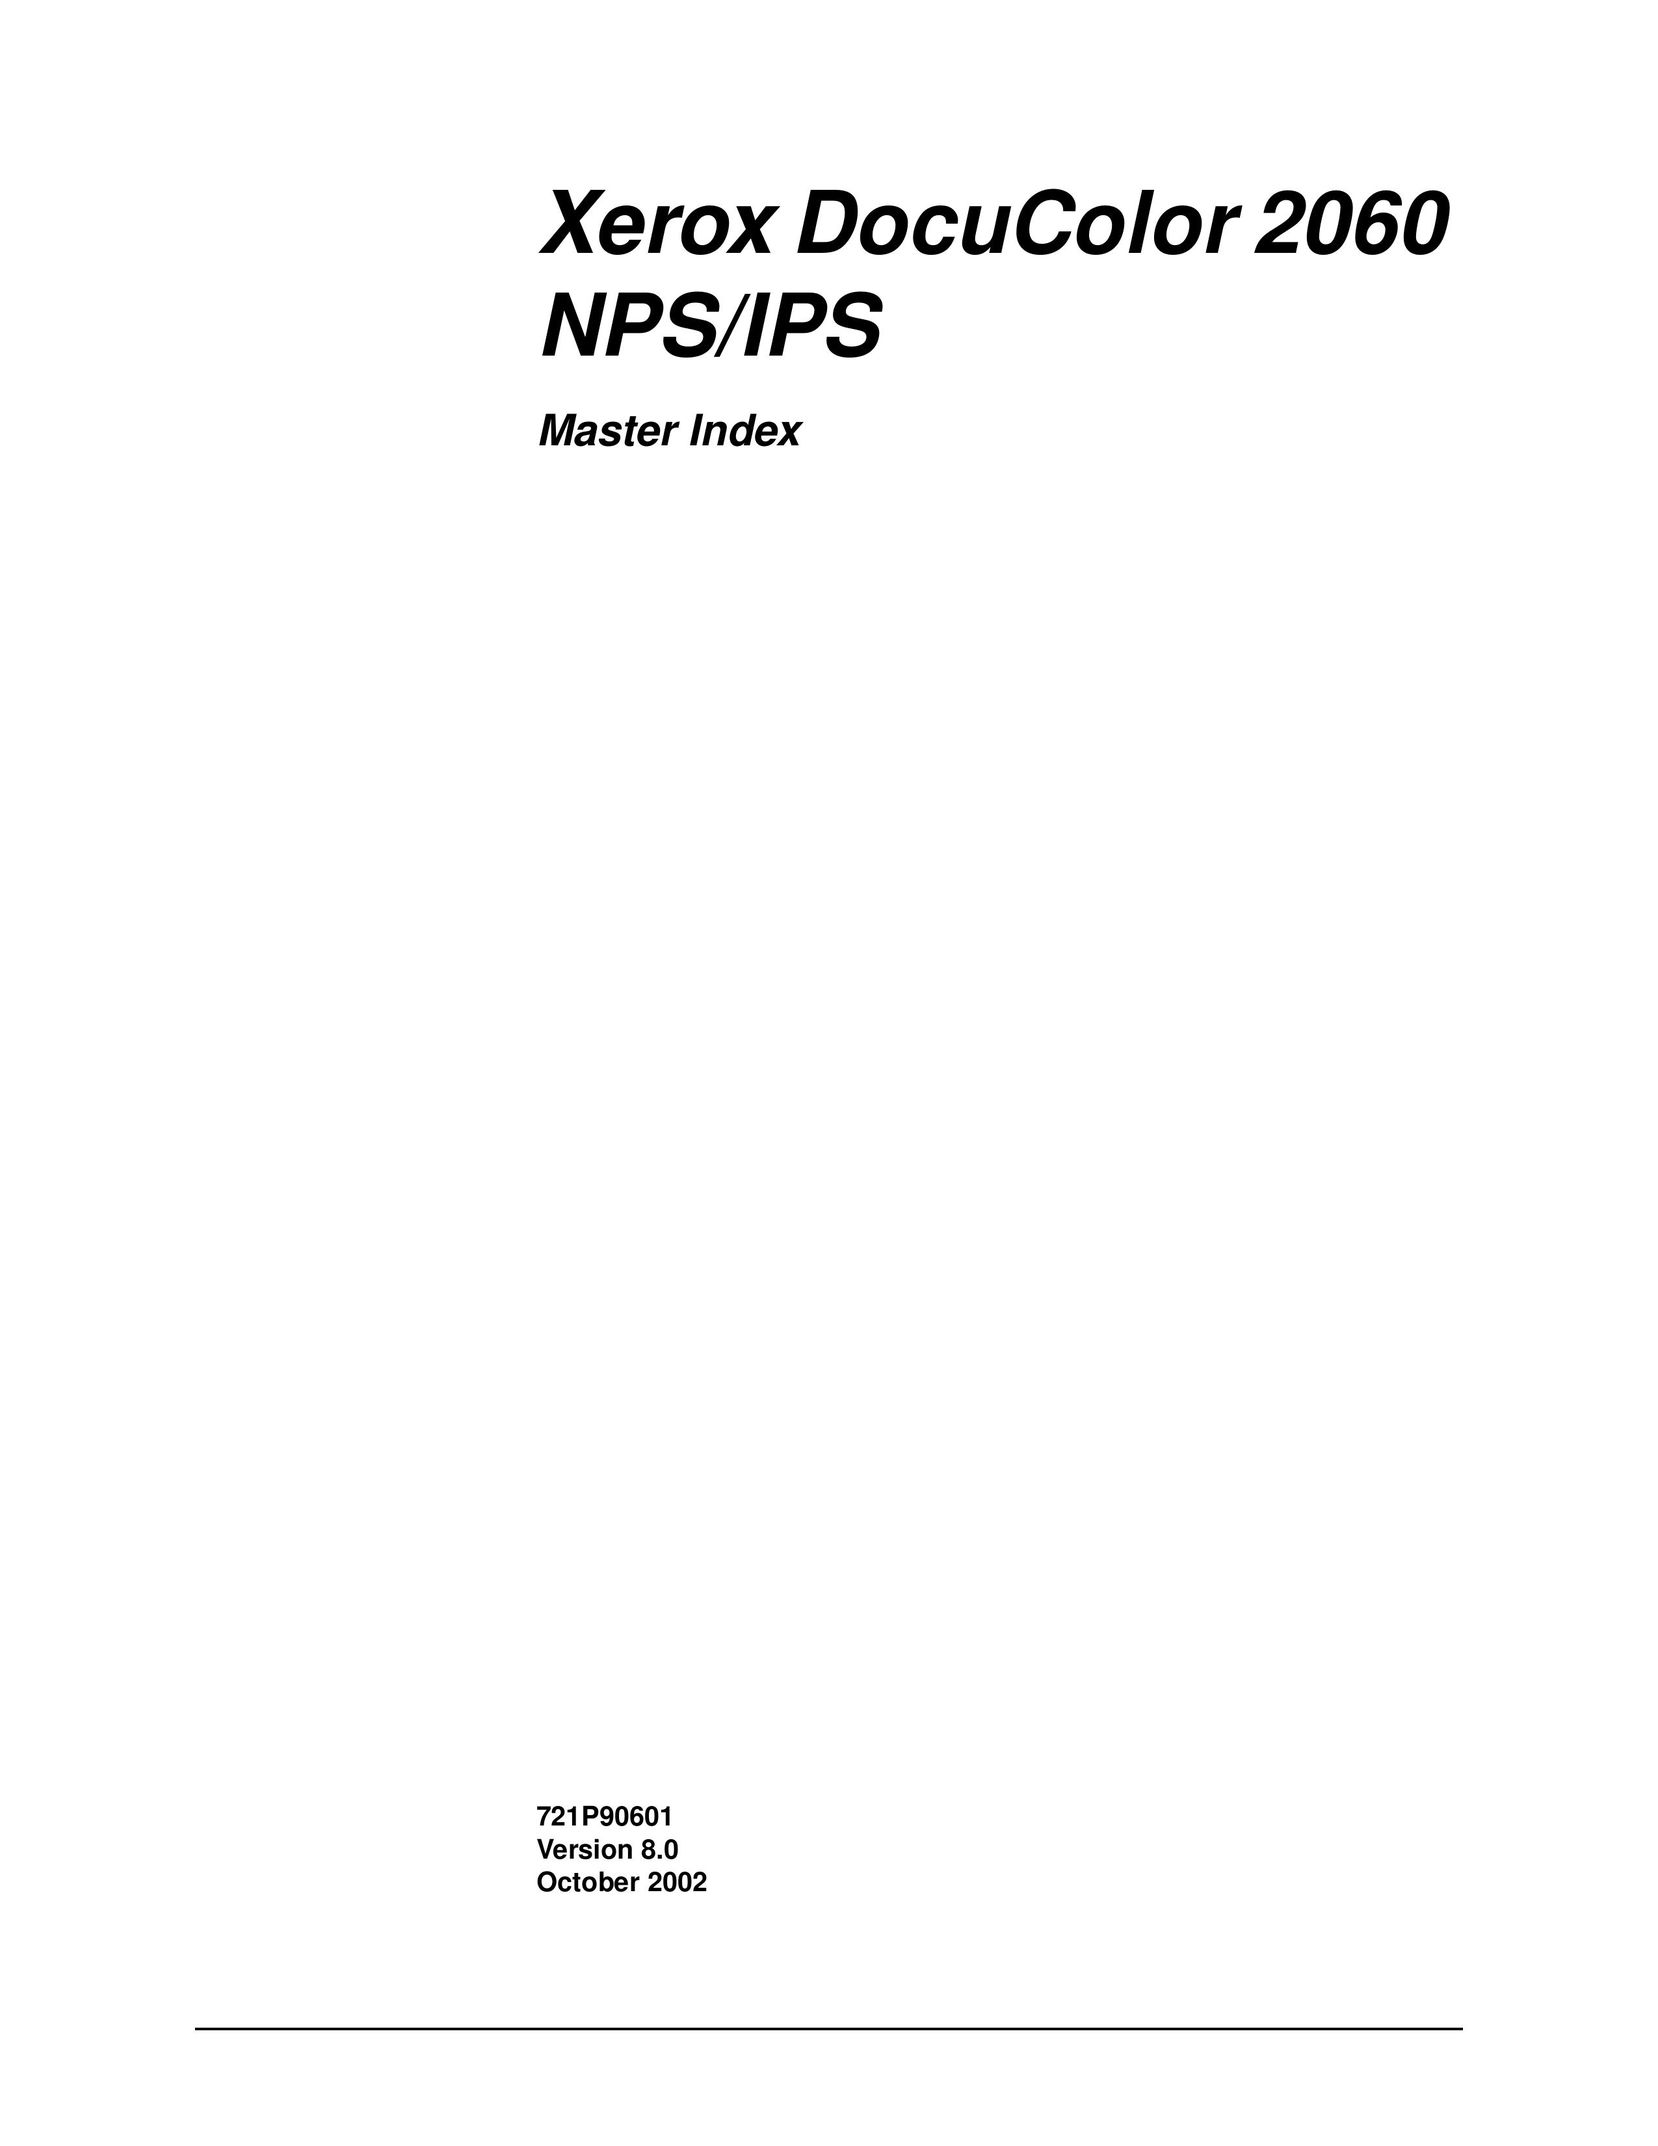 Xerox 2060 IPS Printer User Manual